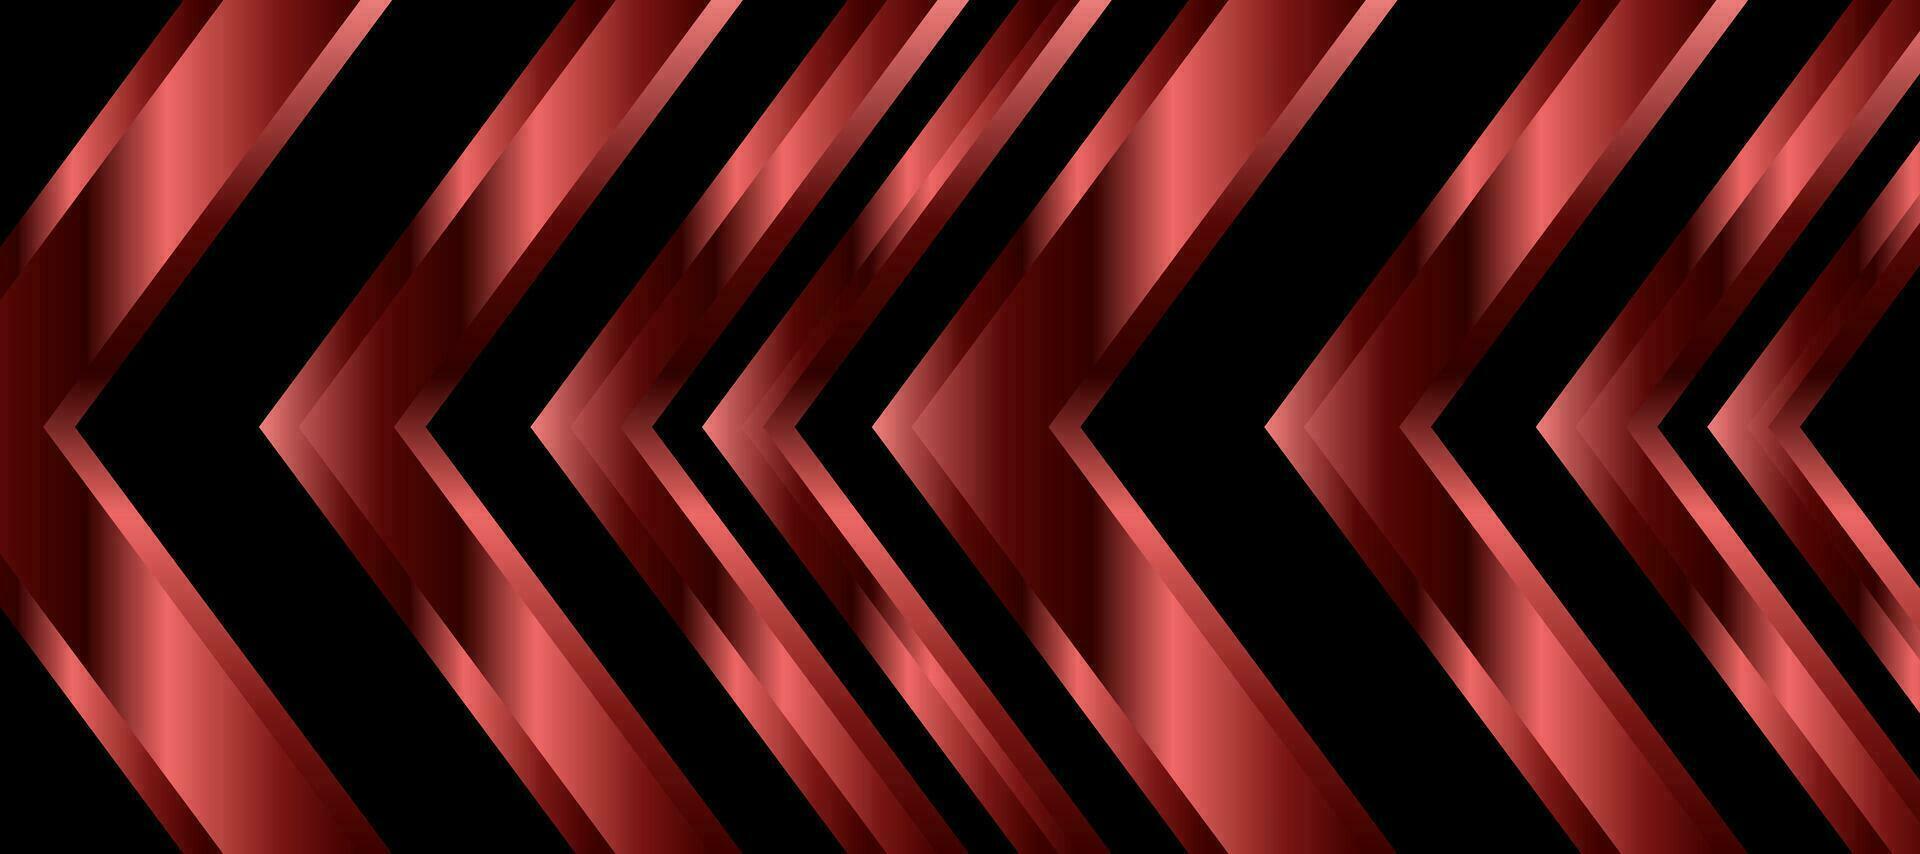 abstrait brillant rouge cuivre La Flèche noir Contexte fond d'écran vecteur